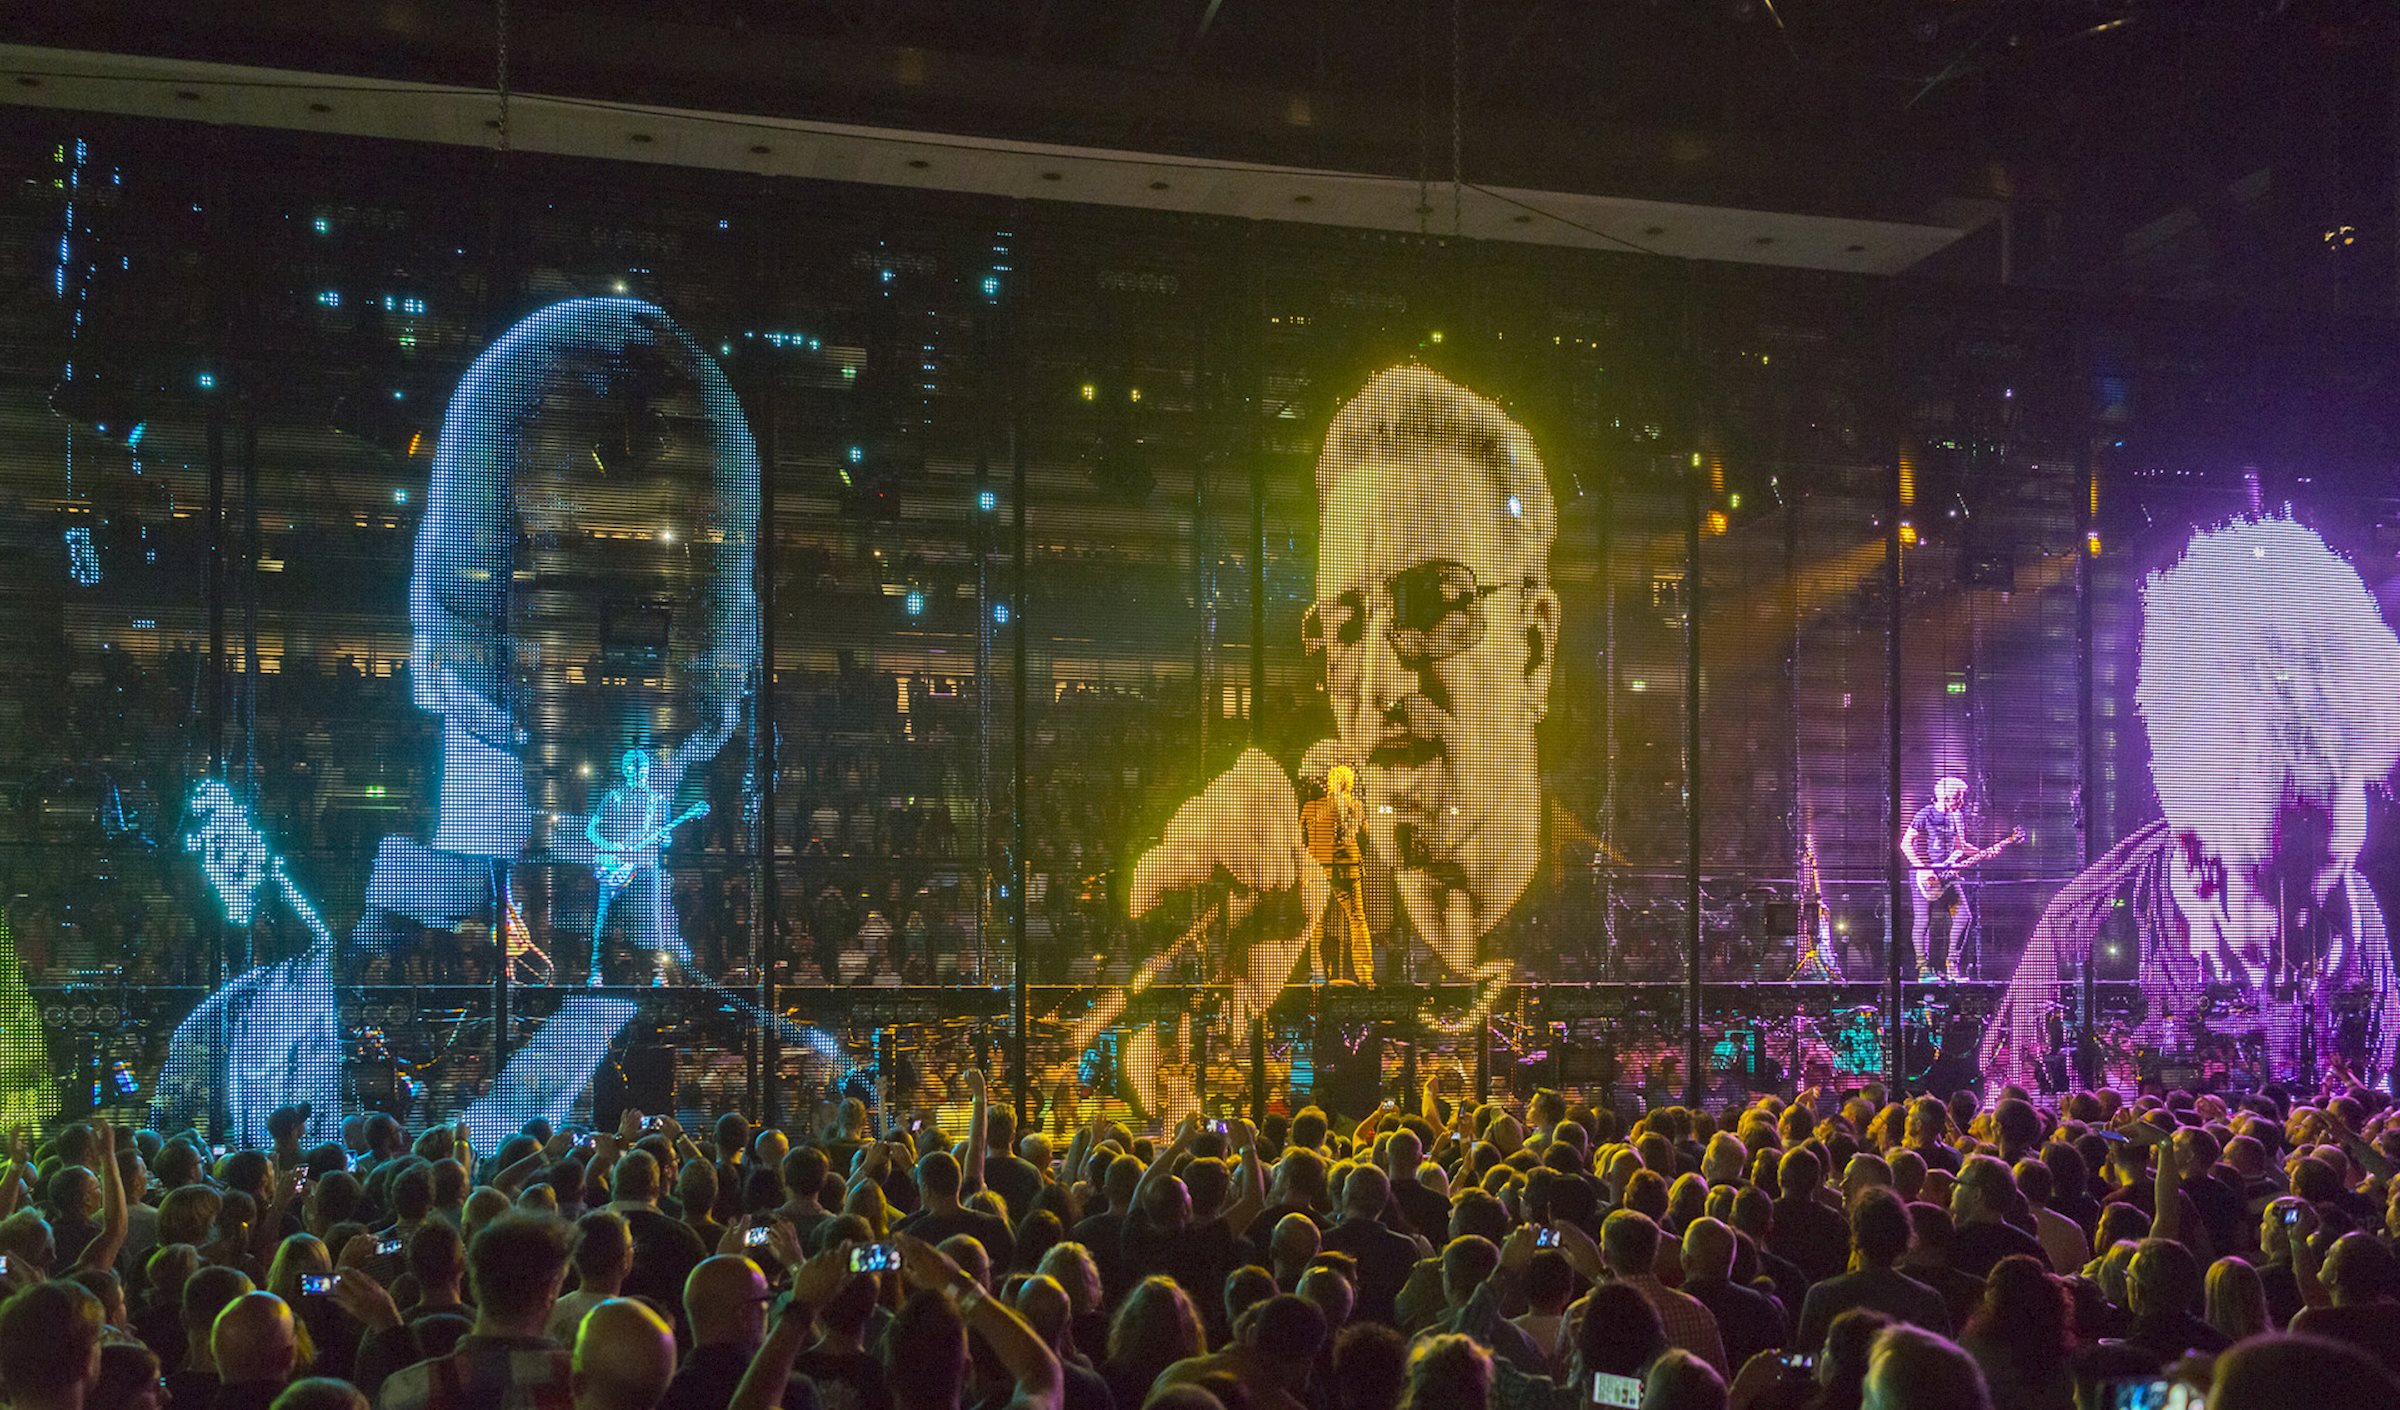 Pure10 en Rolling Video Floor Risers - PRG introduceert de nieuwe Touring-revolutie live met U2's Experience + Innocence Tour